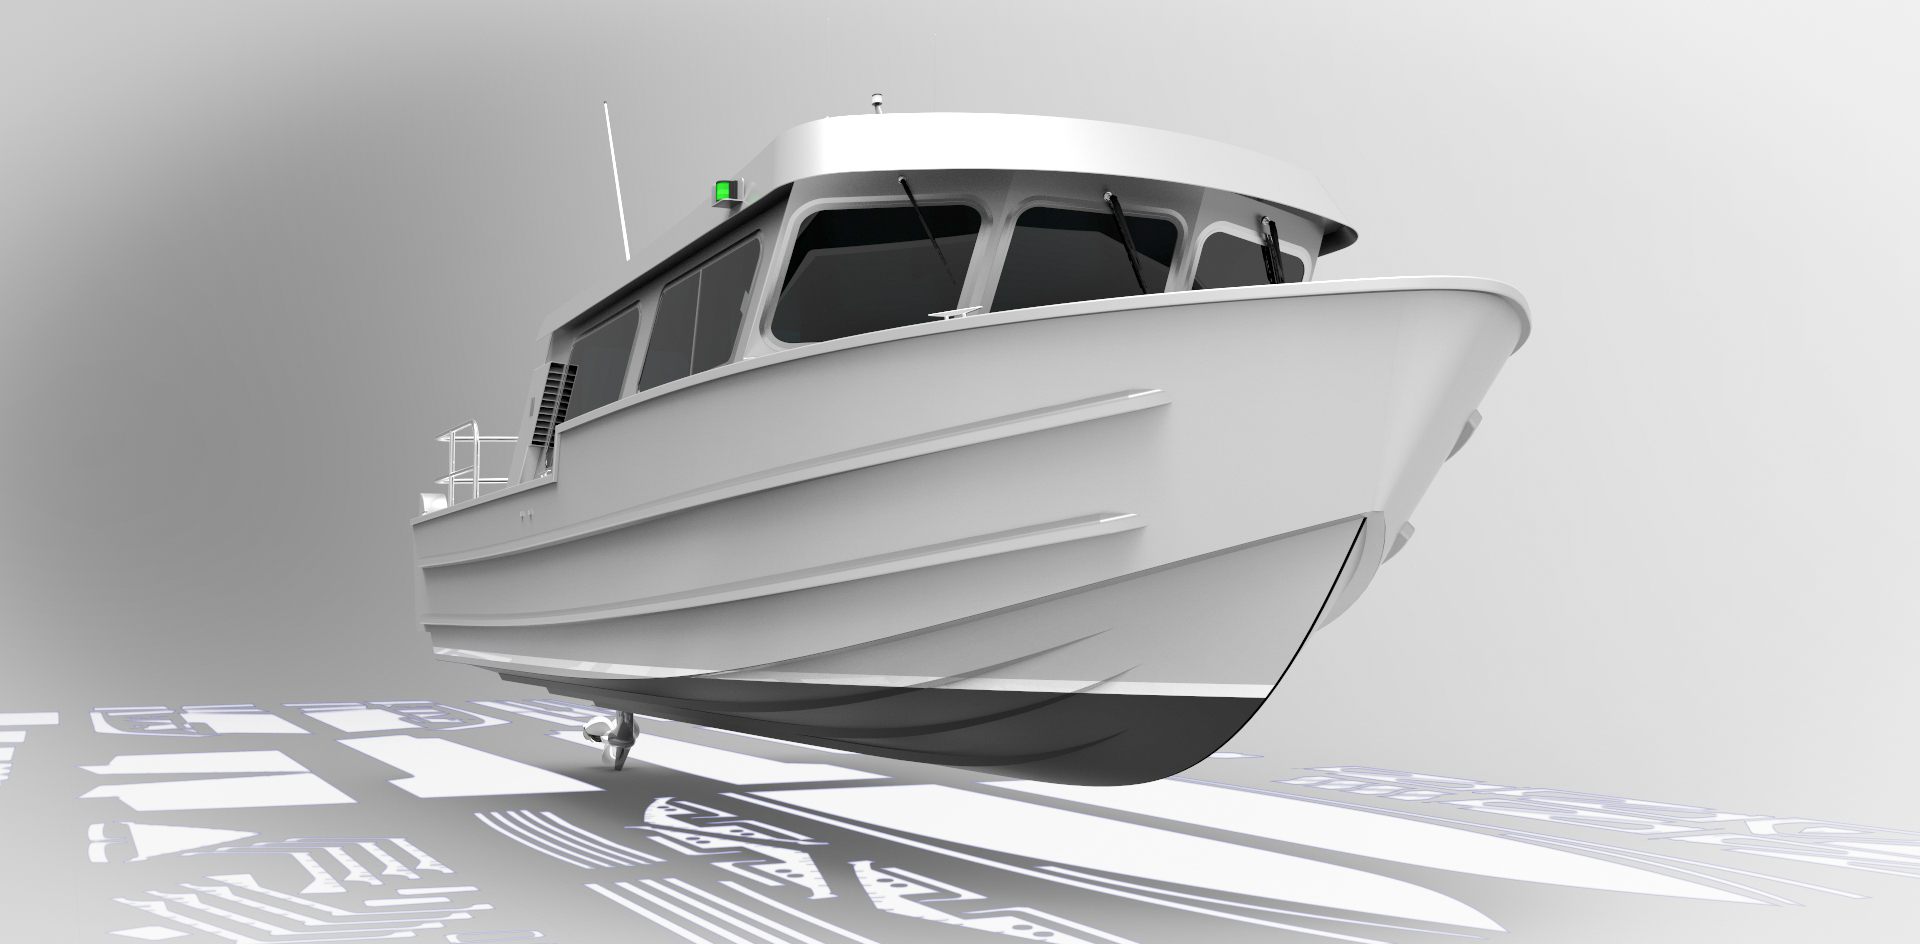 Alaska 275 - Metal Boat Kits